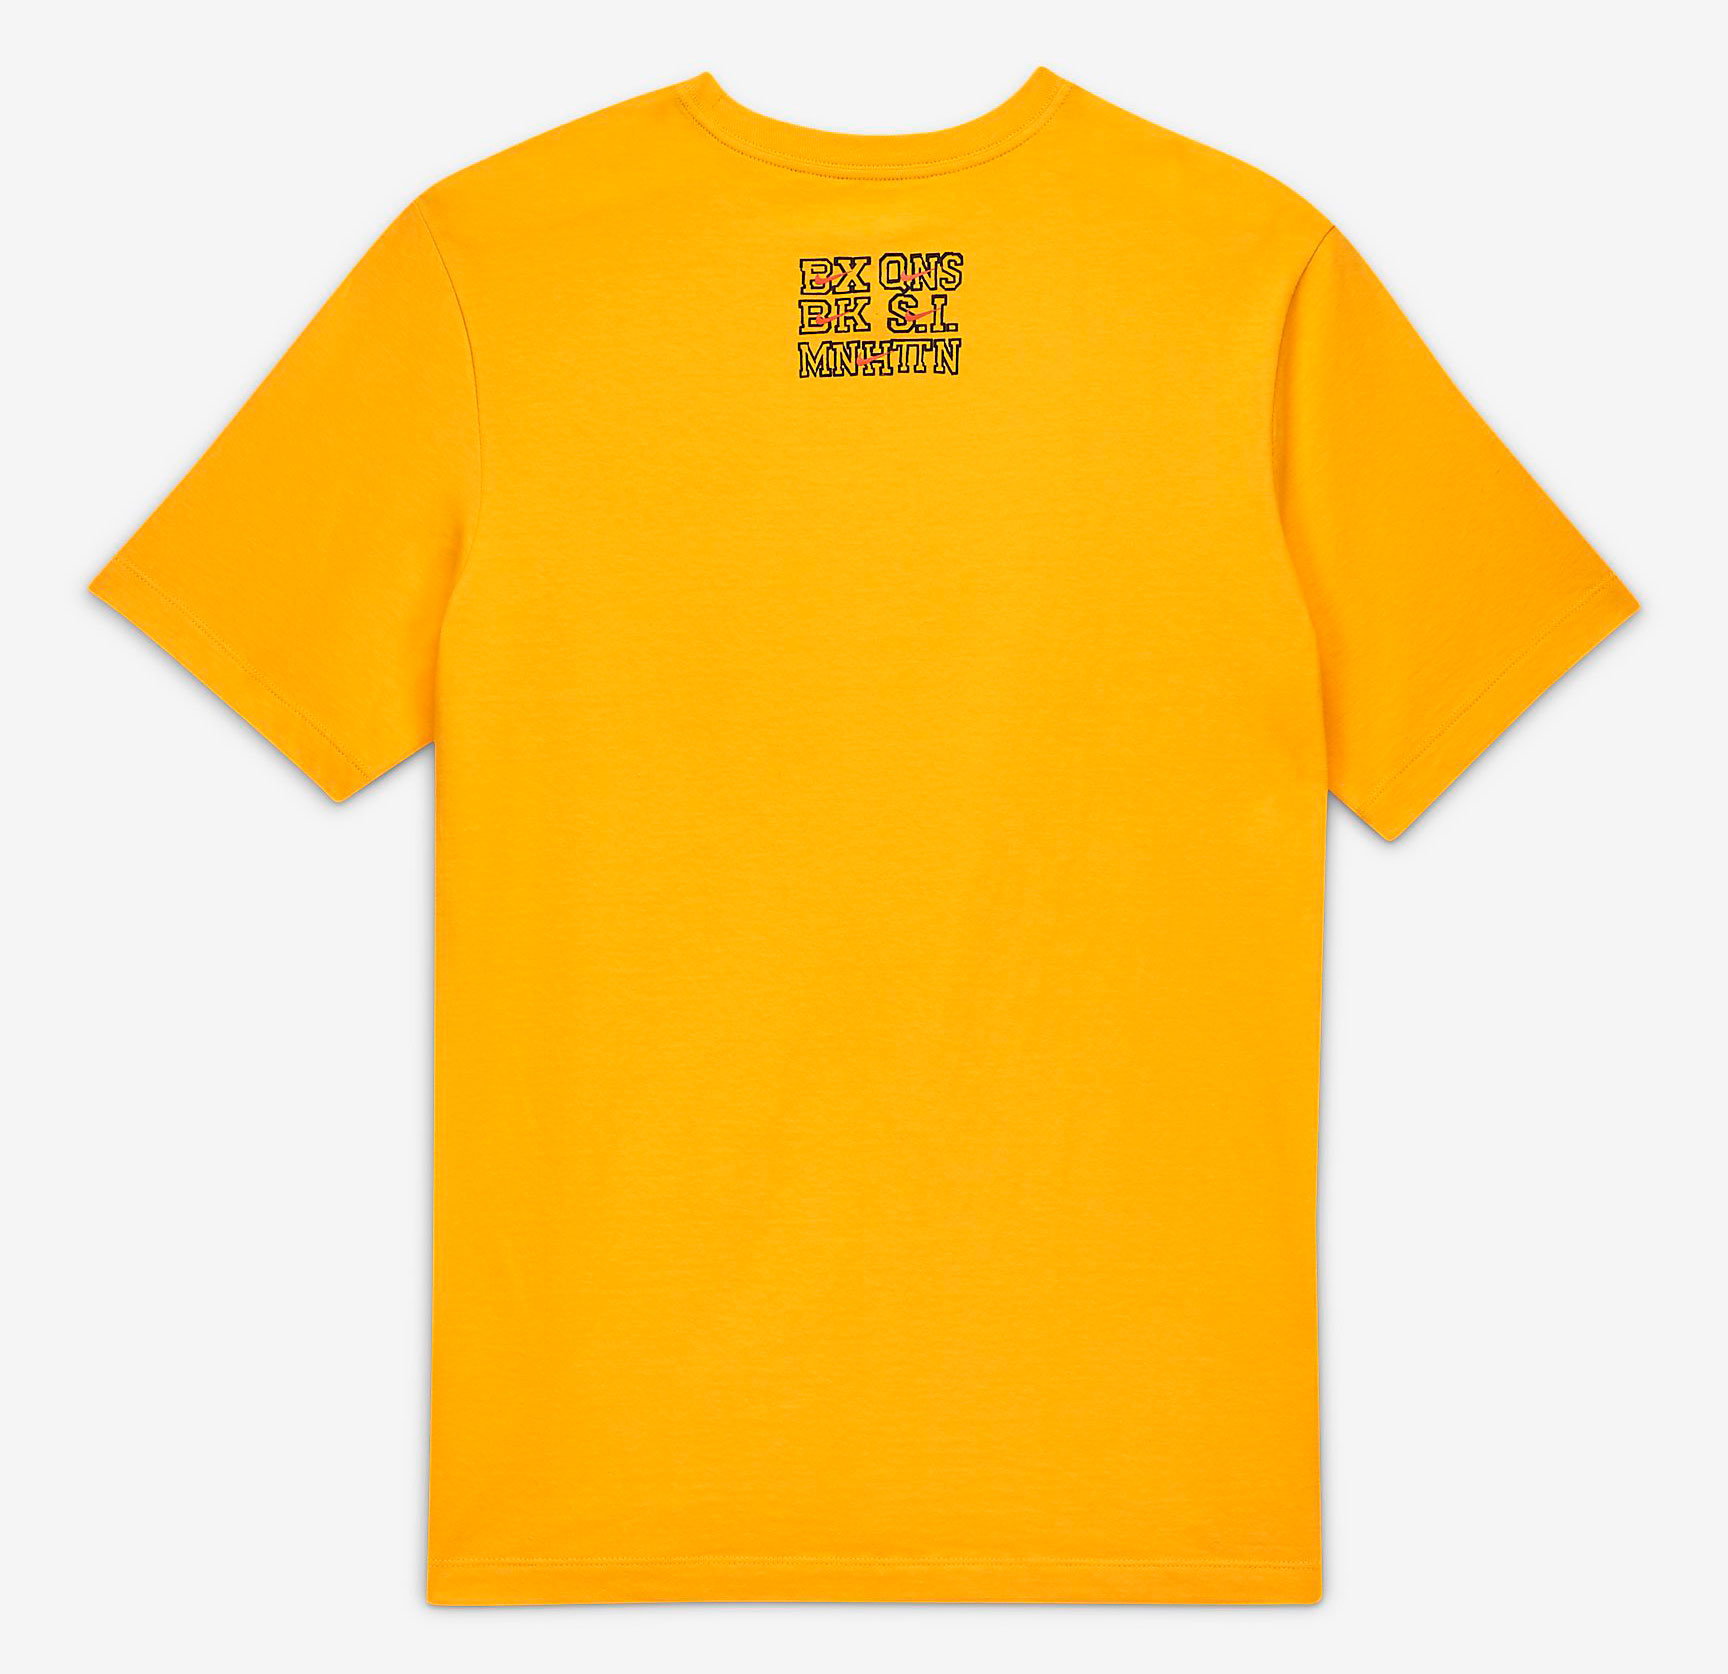 nike-air-force-1-ny-vs-ny-shirt-yellow-2